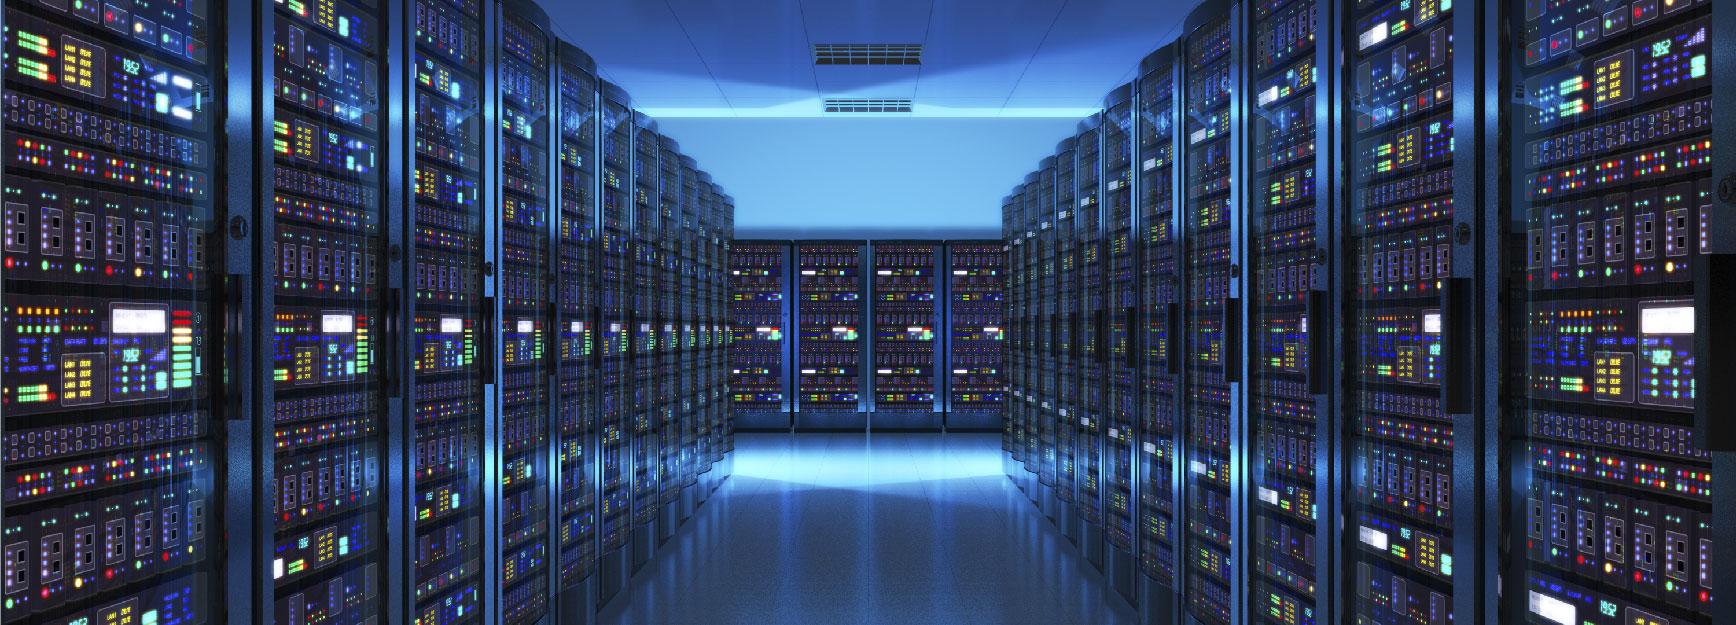 Data storage center